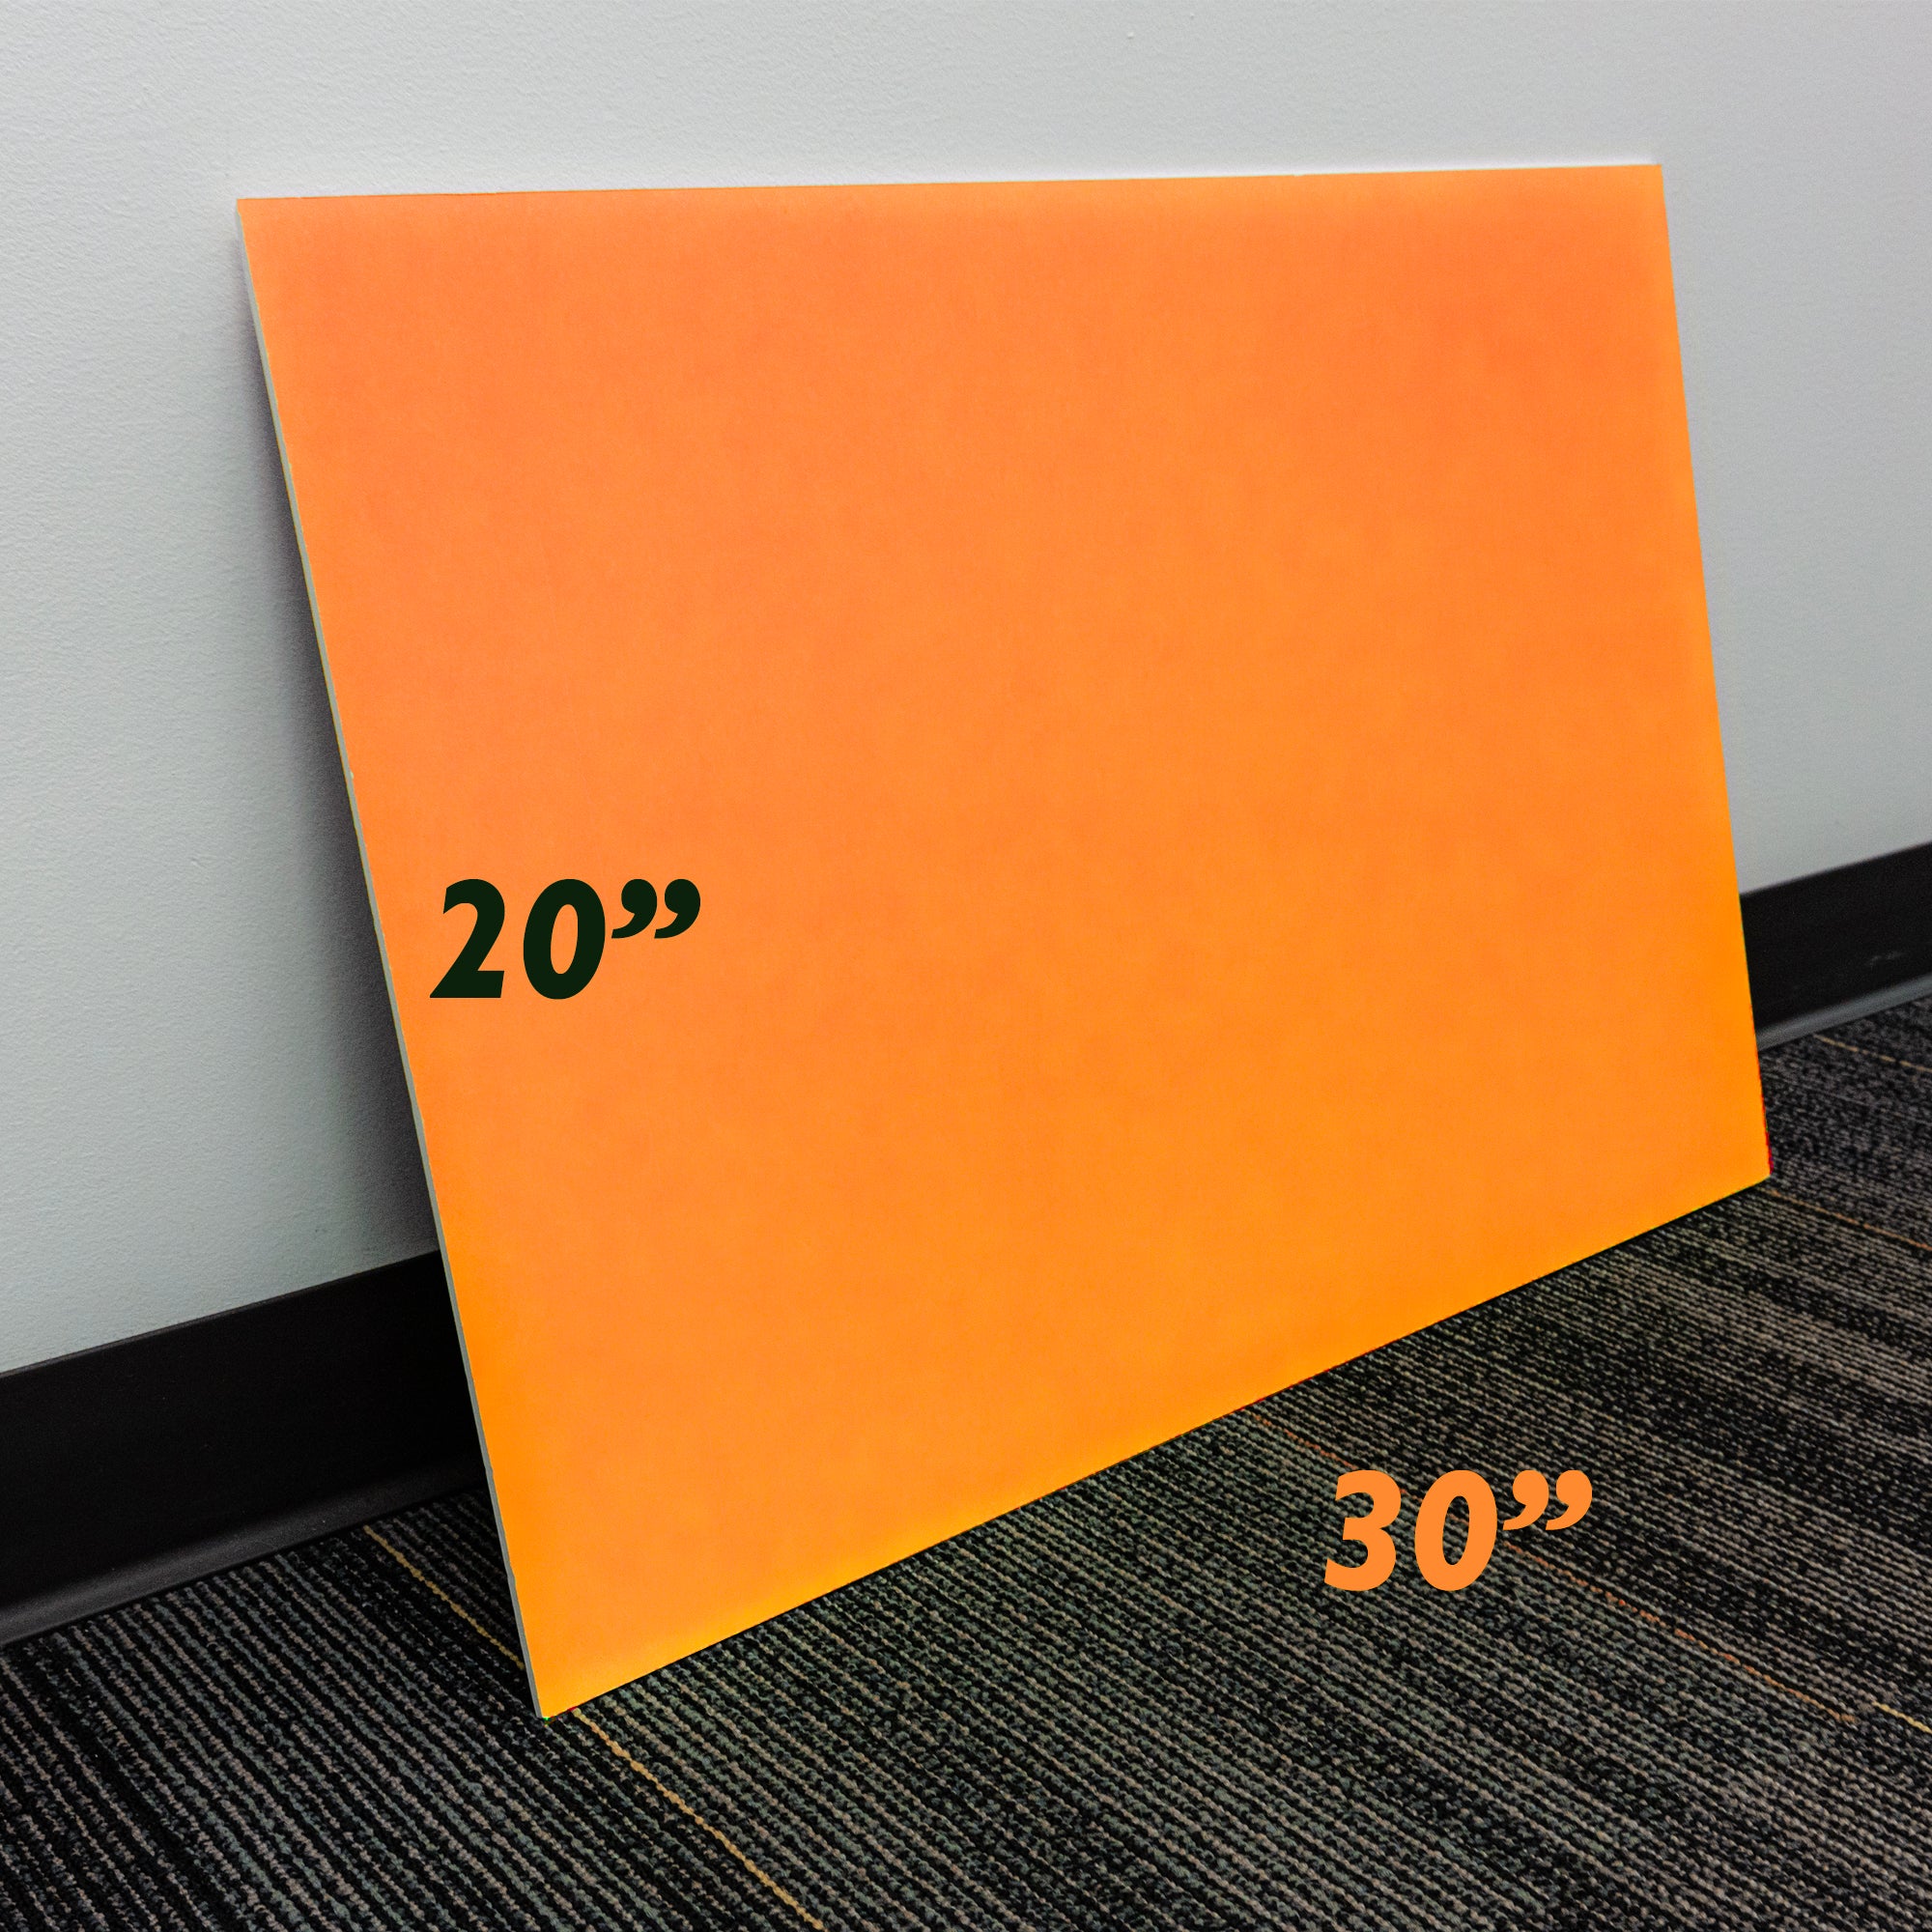 Fluorescent Orange Paper - Quad Labels